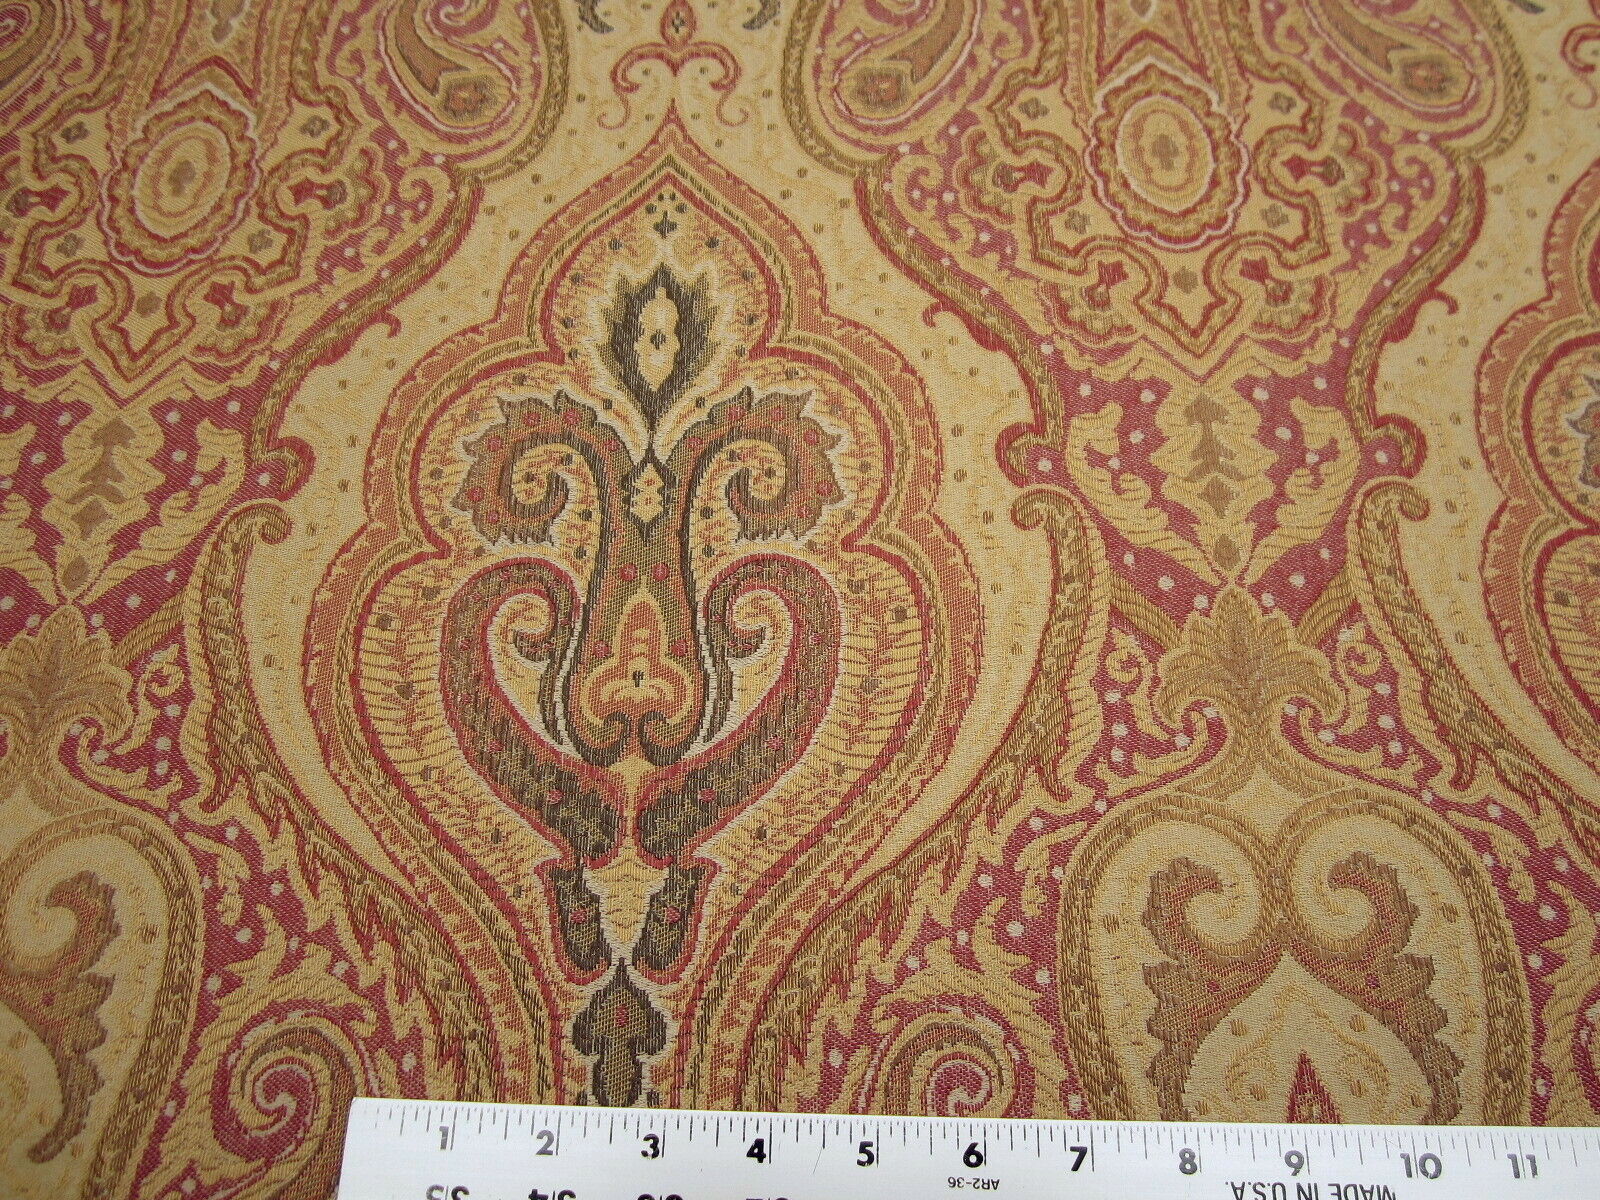 5 1/2 yards of Kravet damask 31437-1619 upholstery fabric